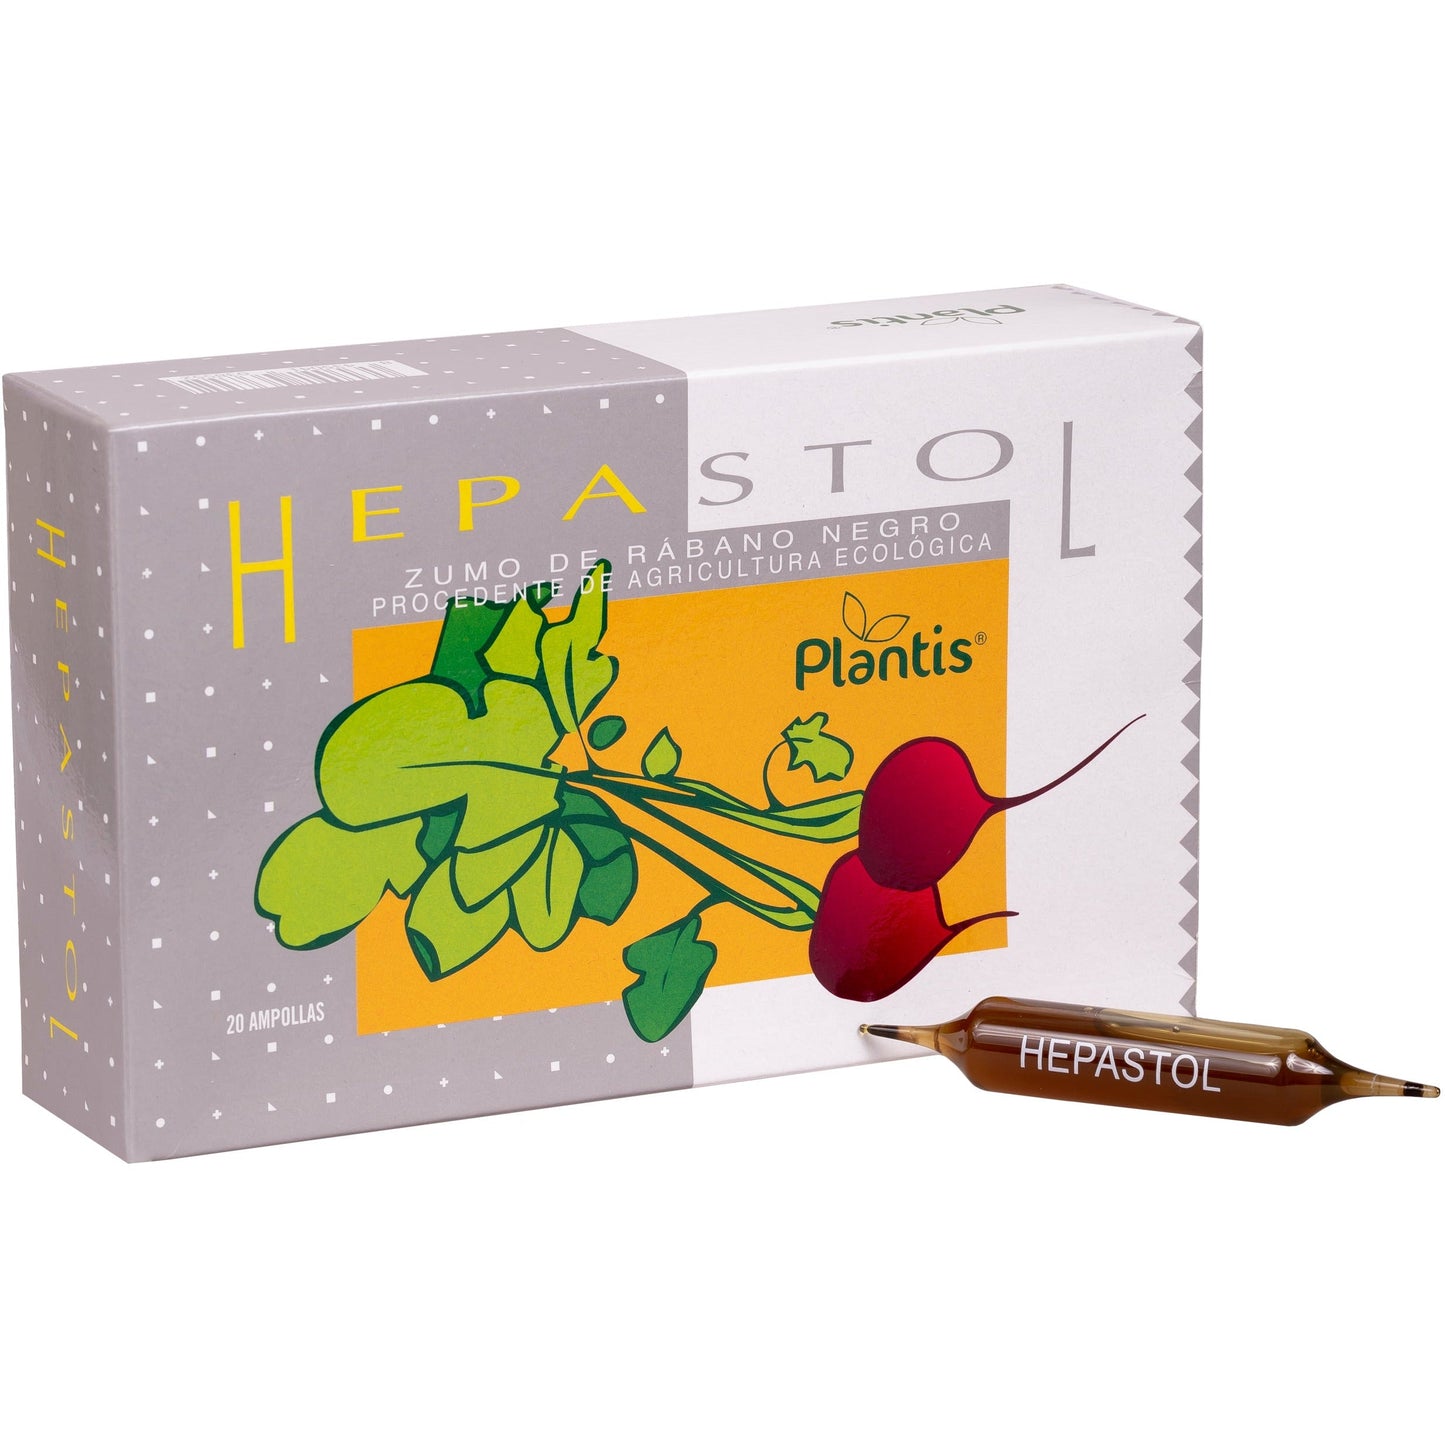 Hepastol 20 ampollas | Plantis - Dietetica Ferrer